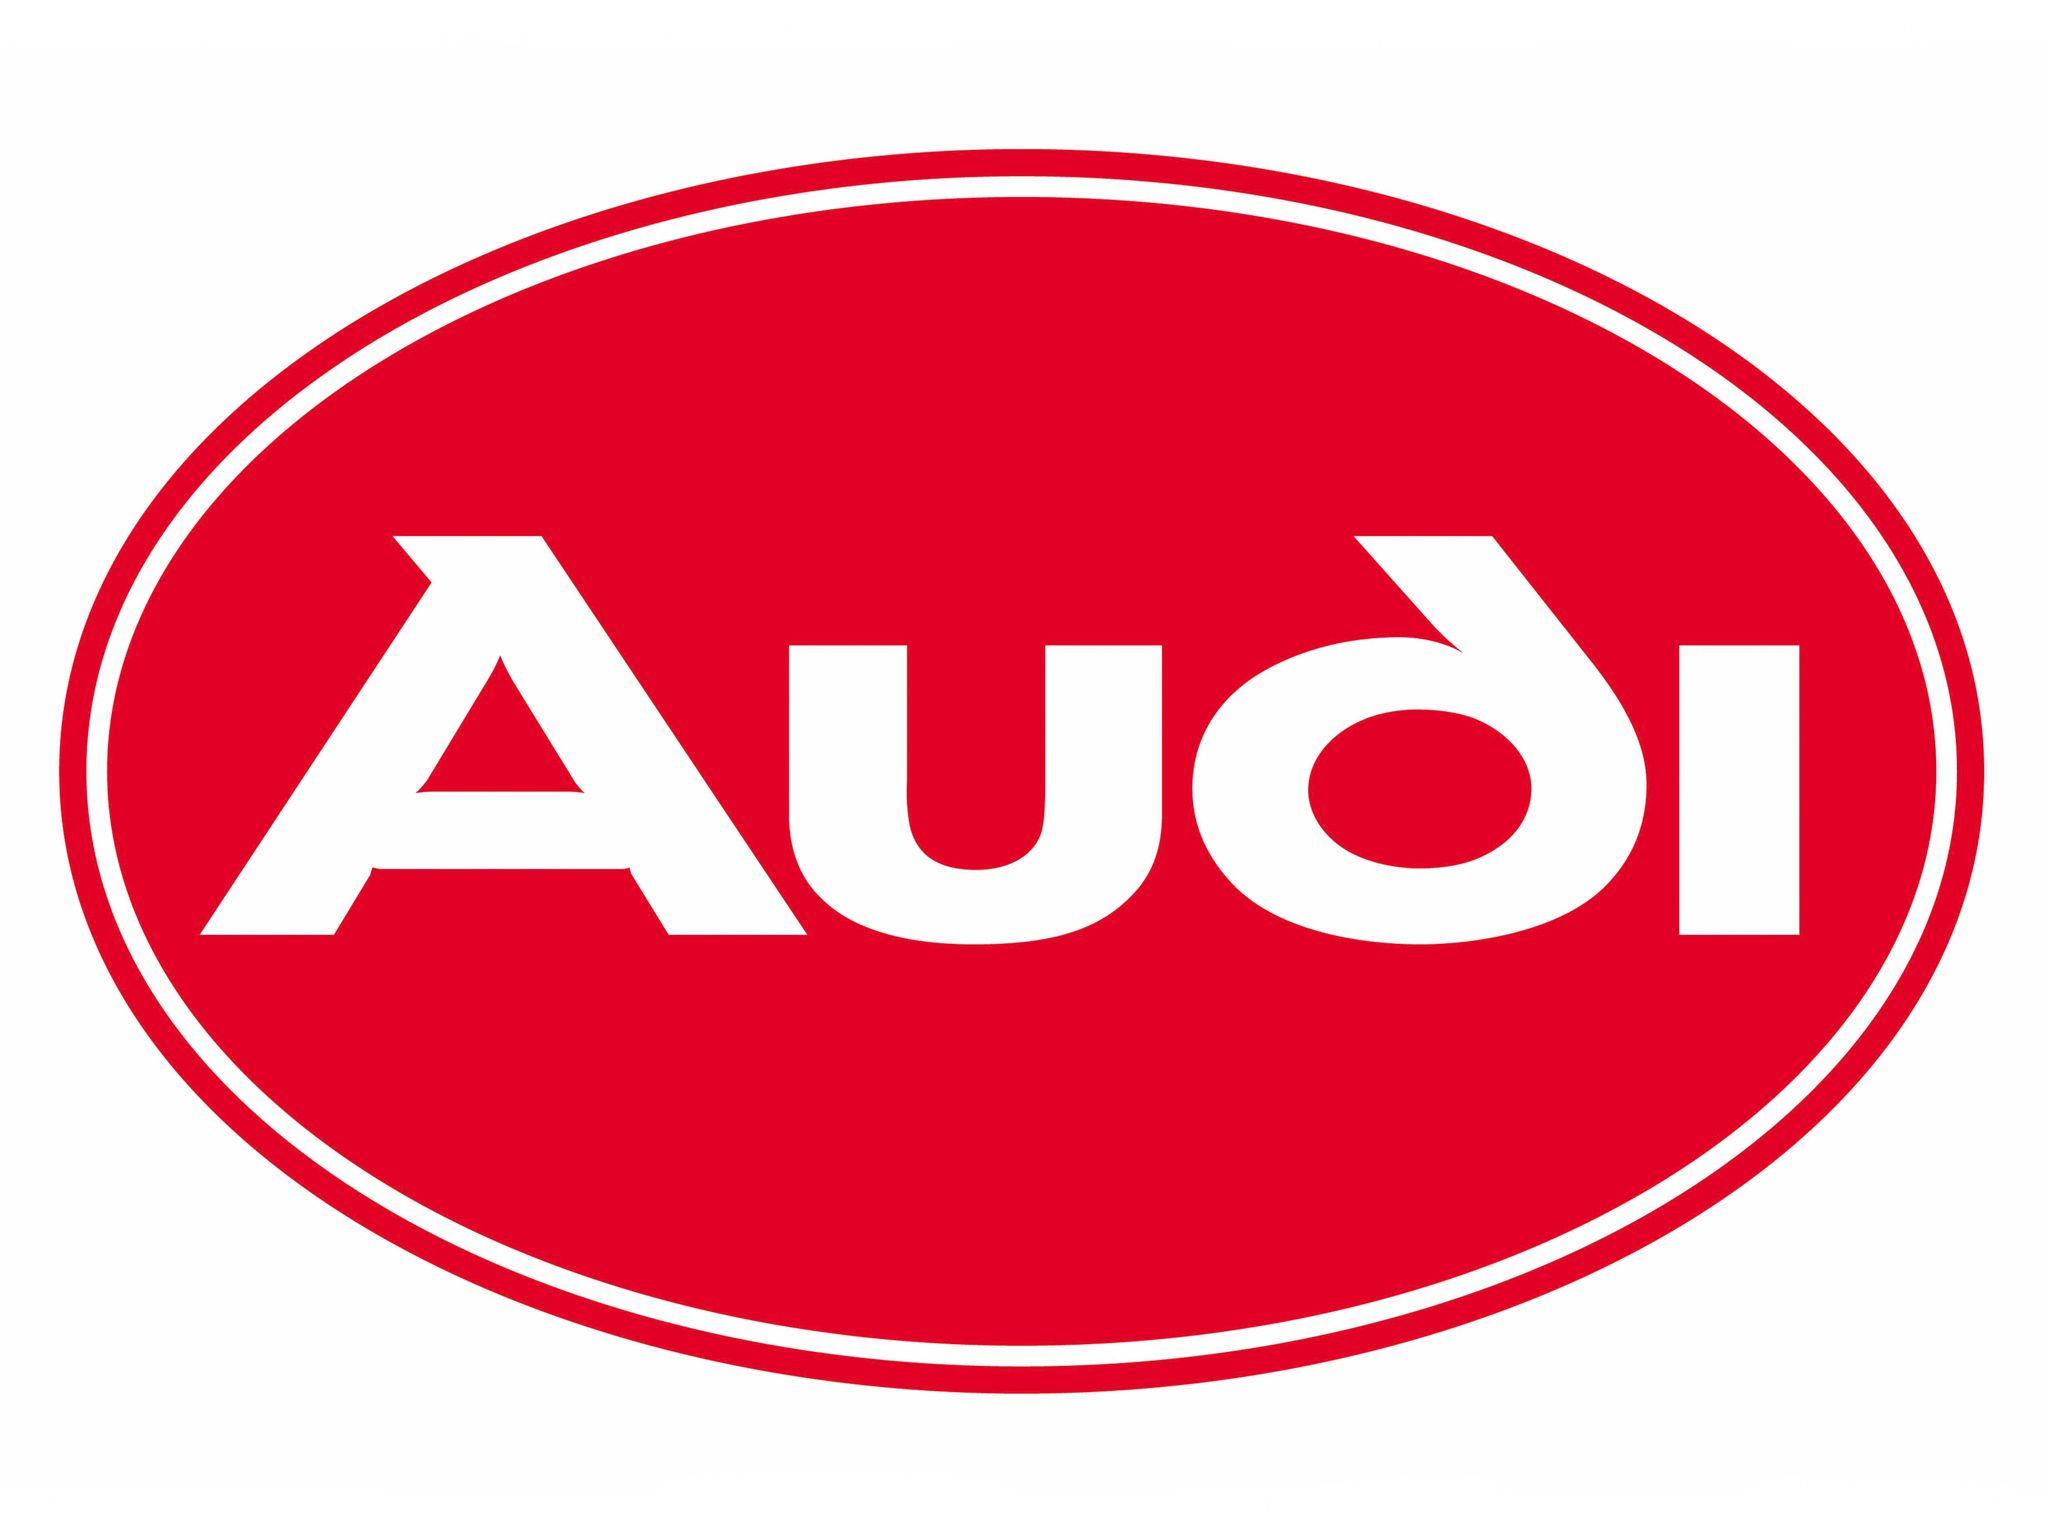 Audi logo Duvet Cover by Colorfux - Pixels